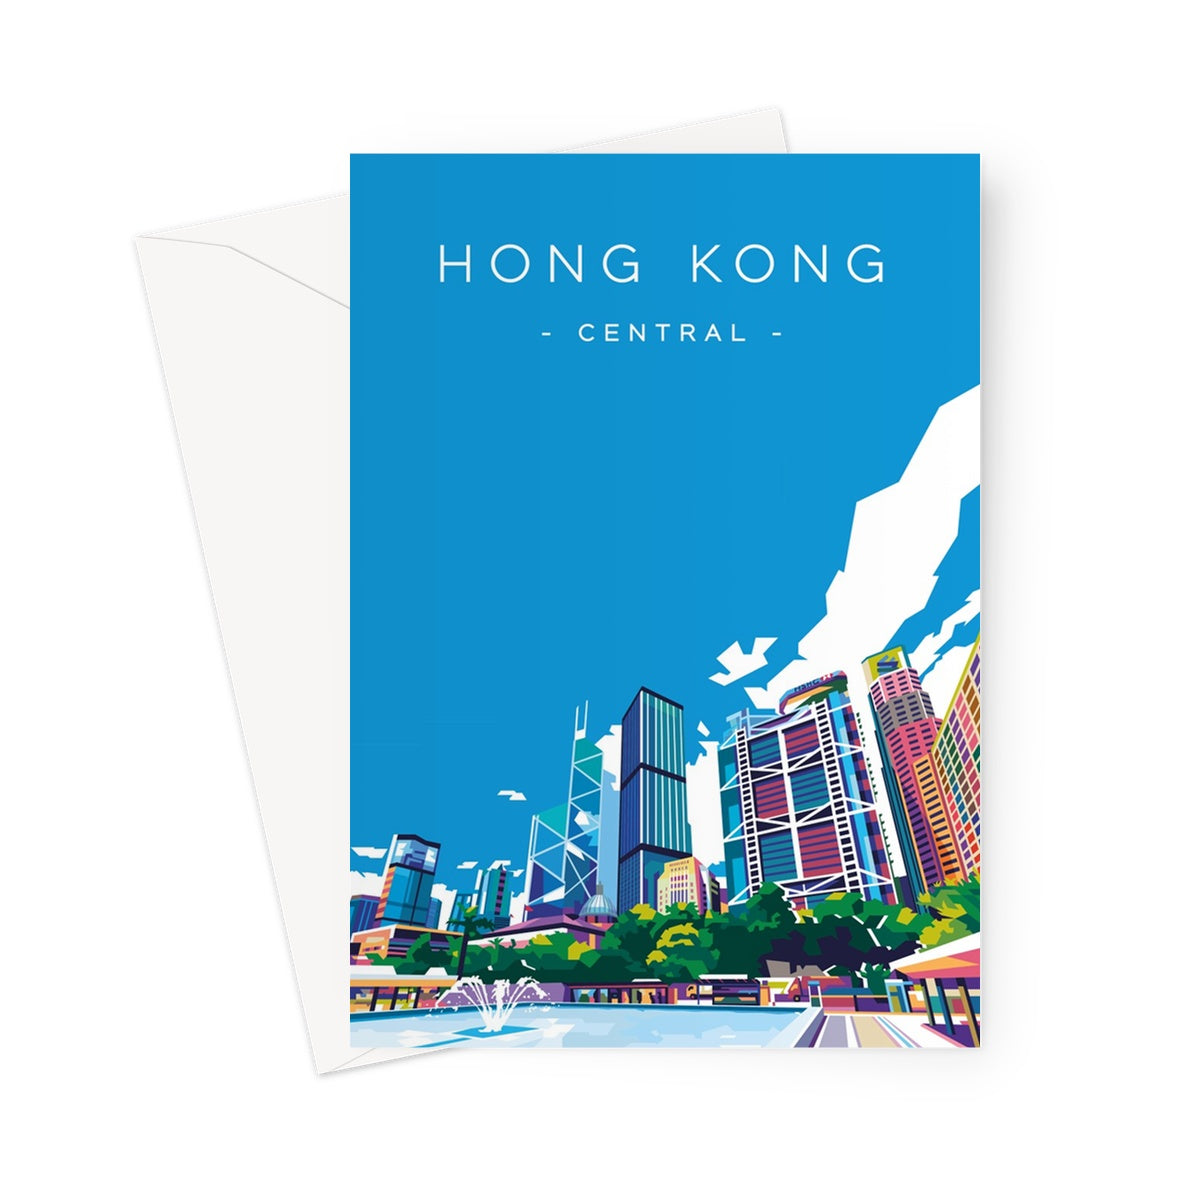 Hong Kong Travel - Central Greeting Card